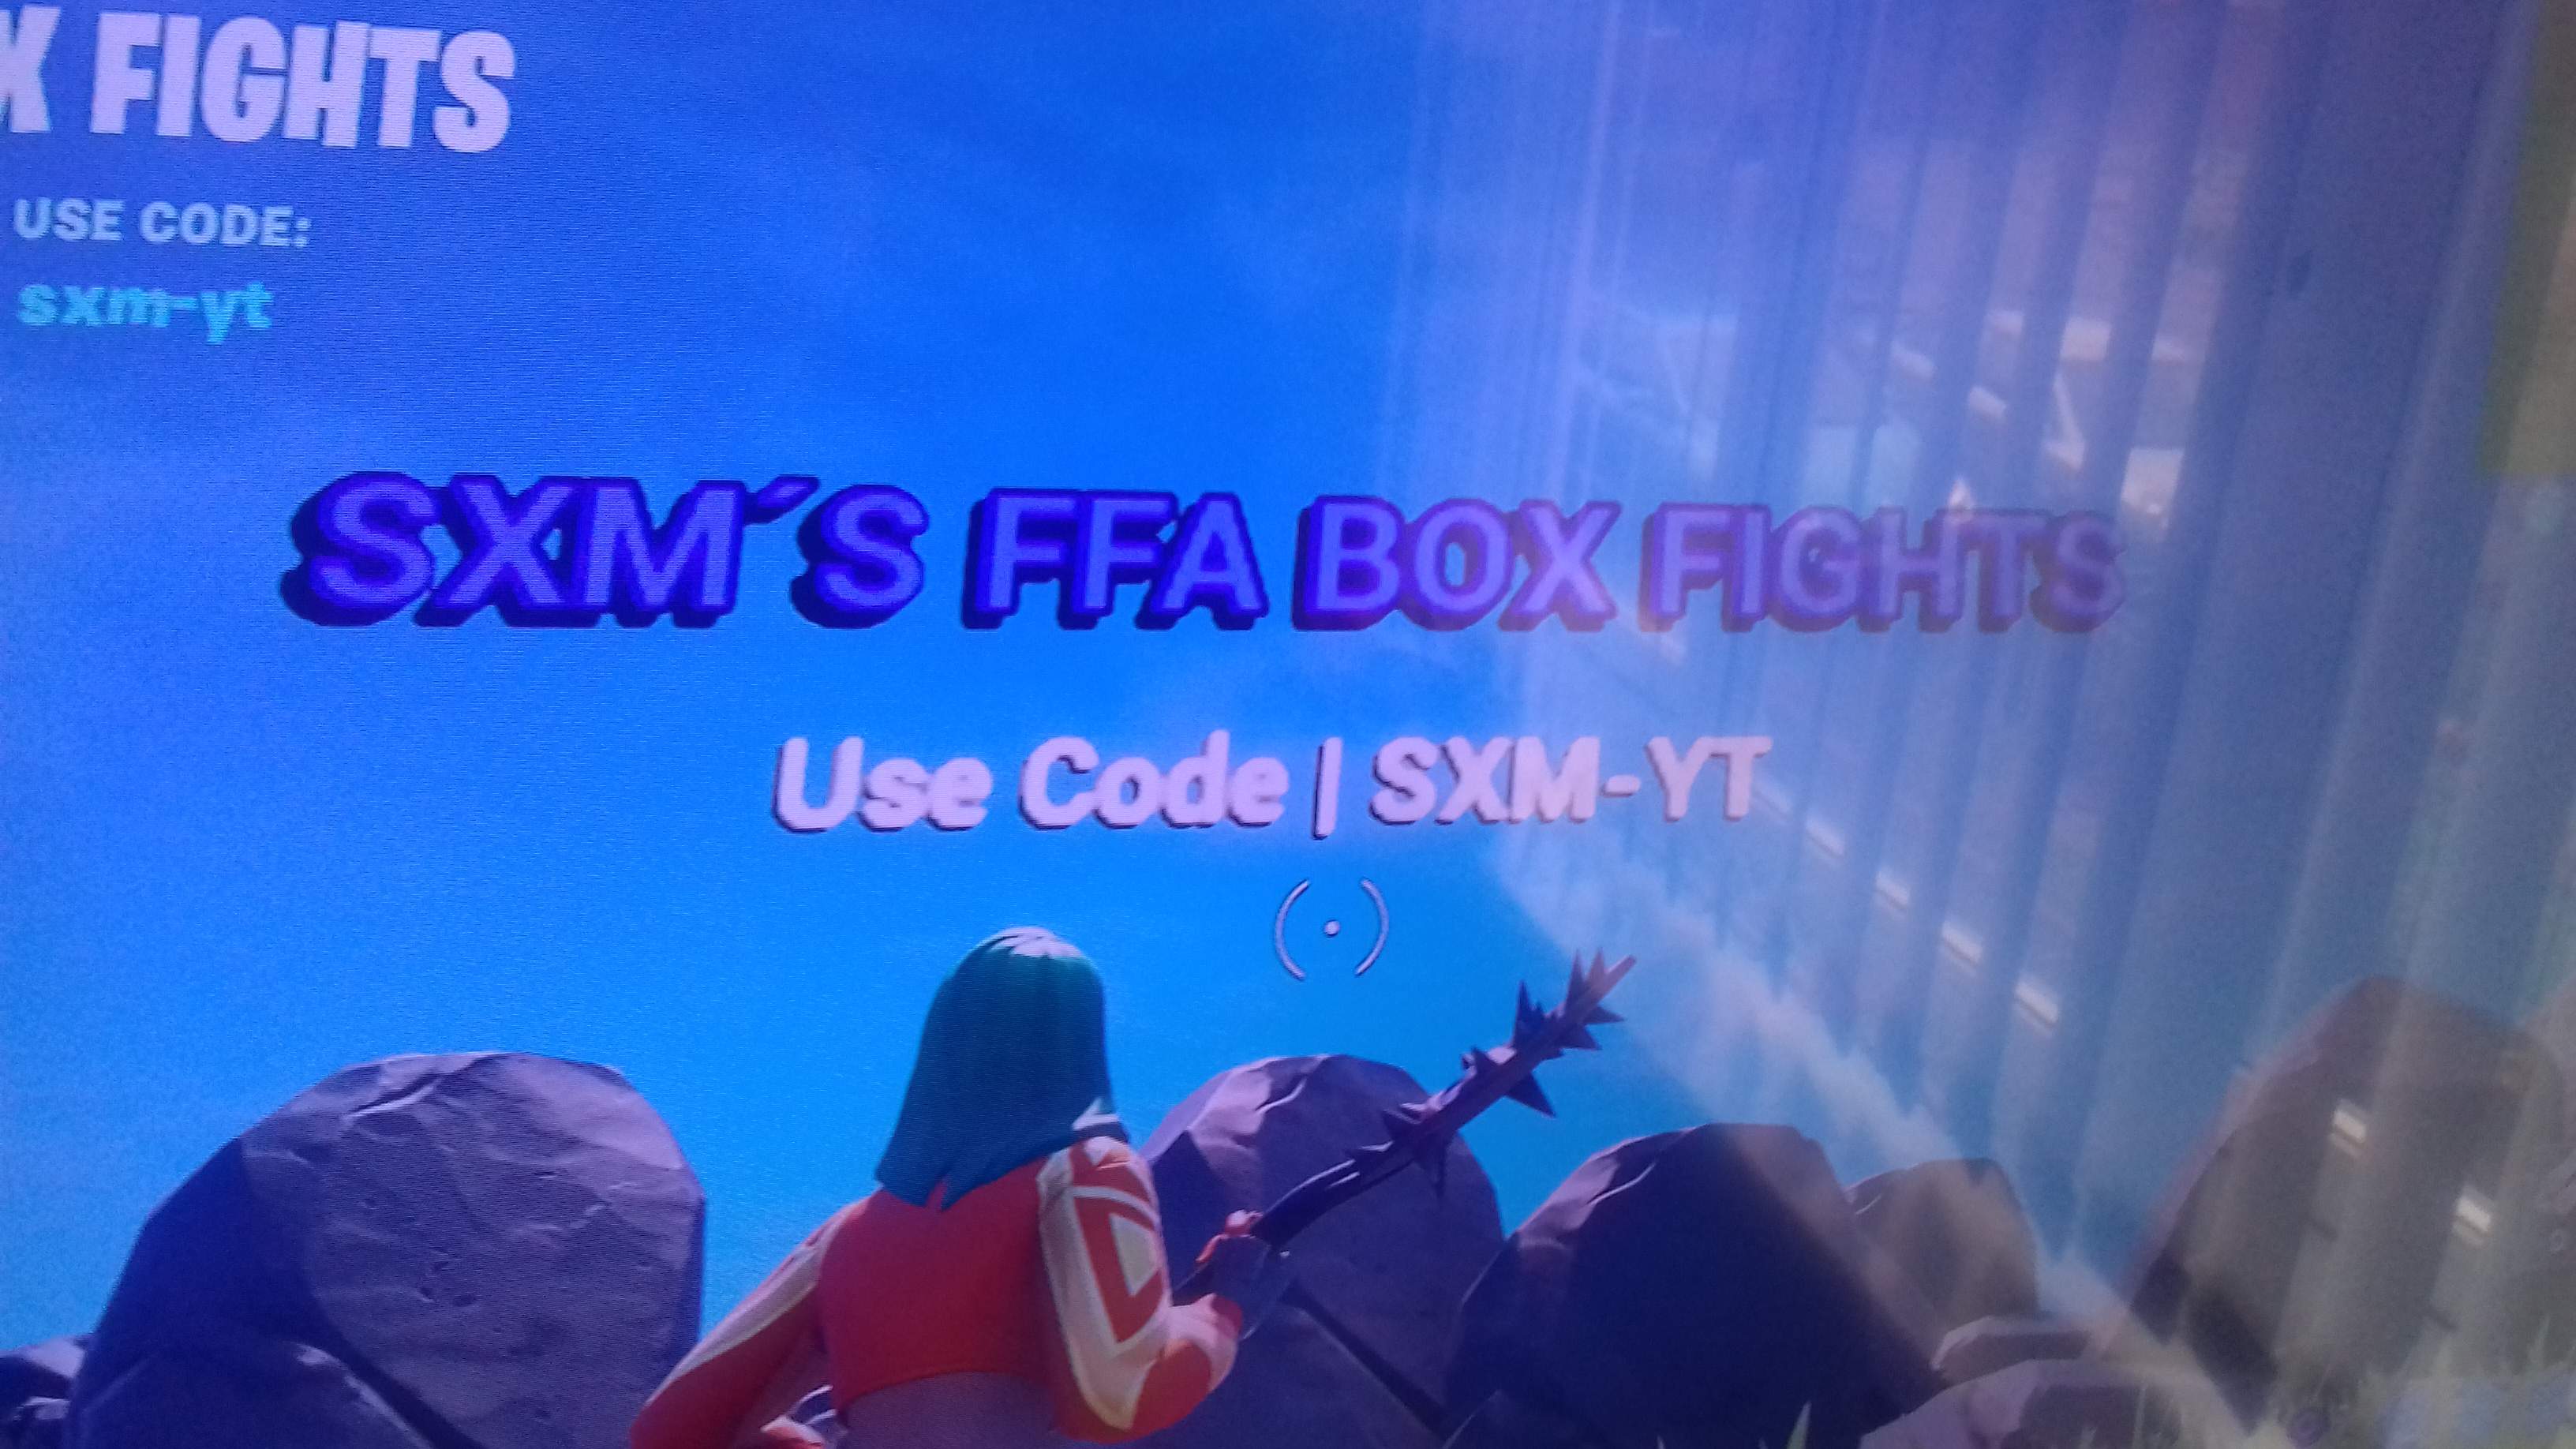 SXM´S FFA BOX FIGHTS